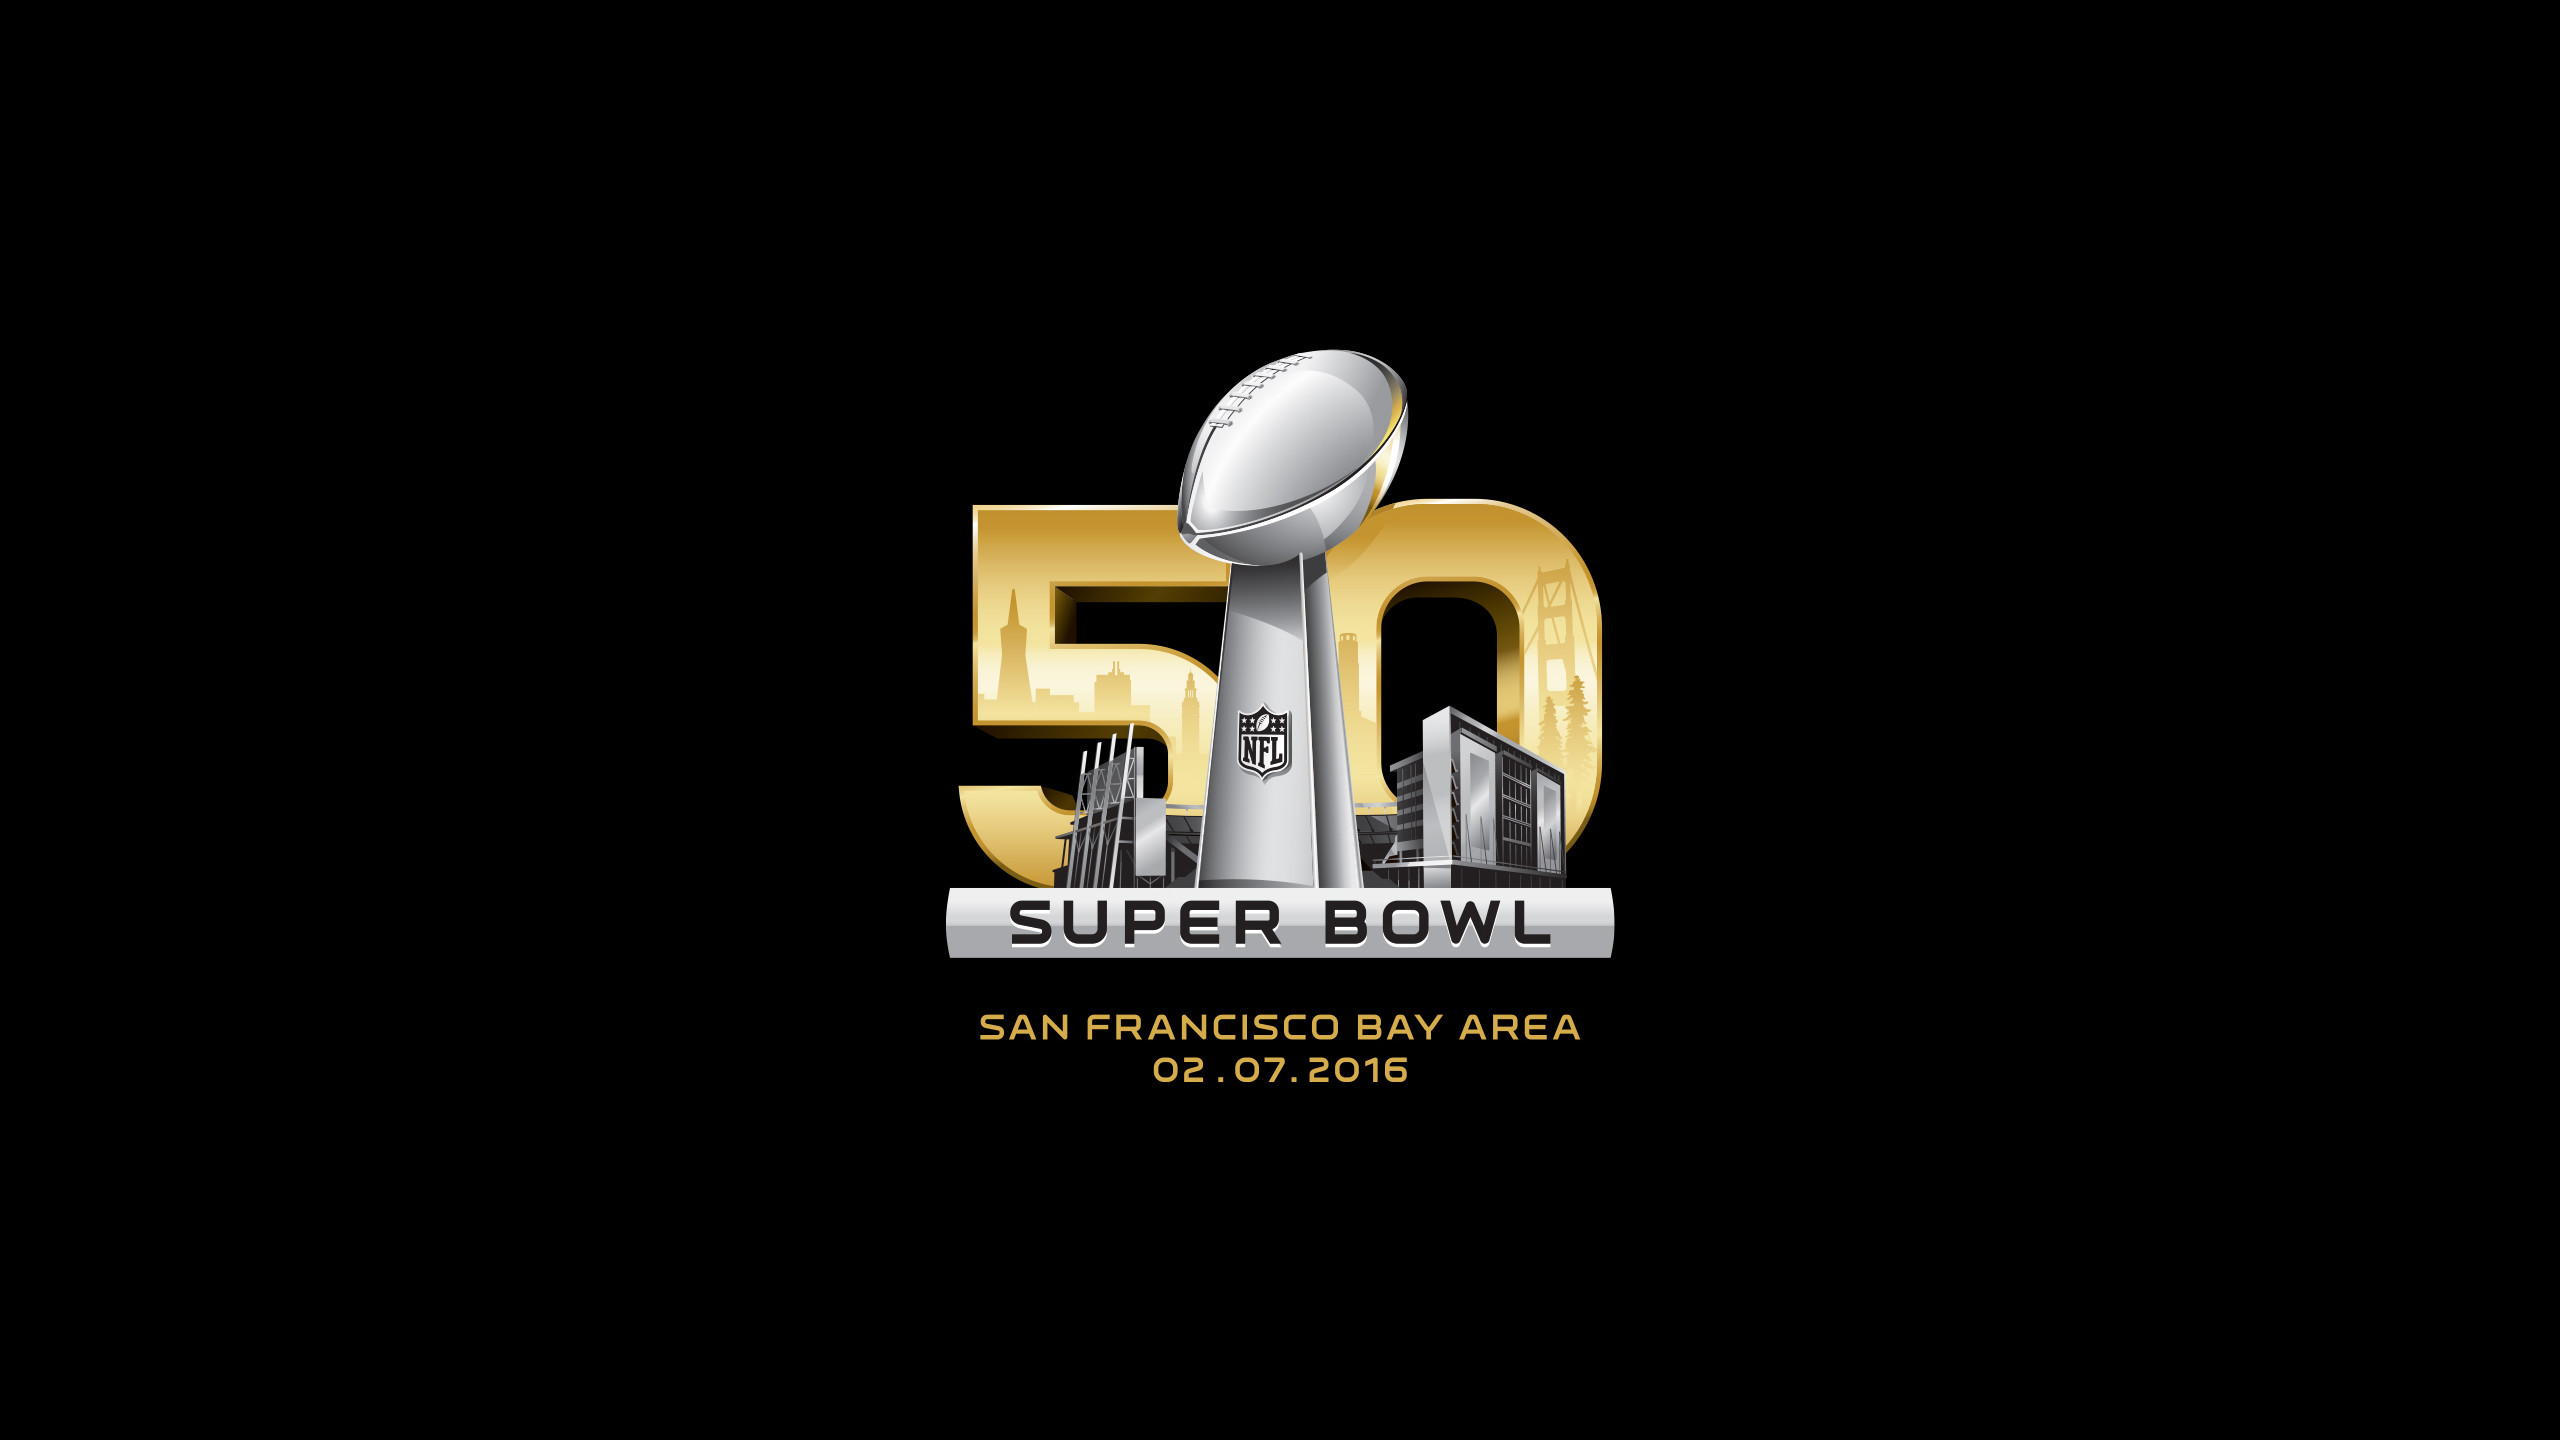 2560x1440 Super Bowl 50 desktop wallpaper